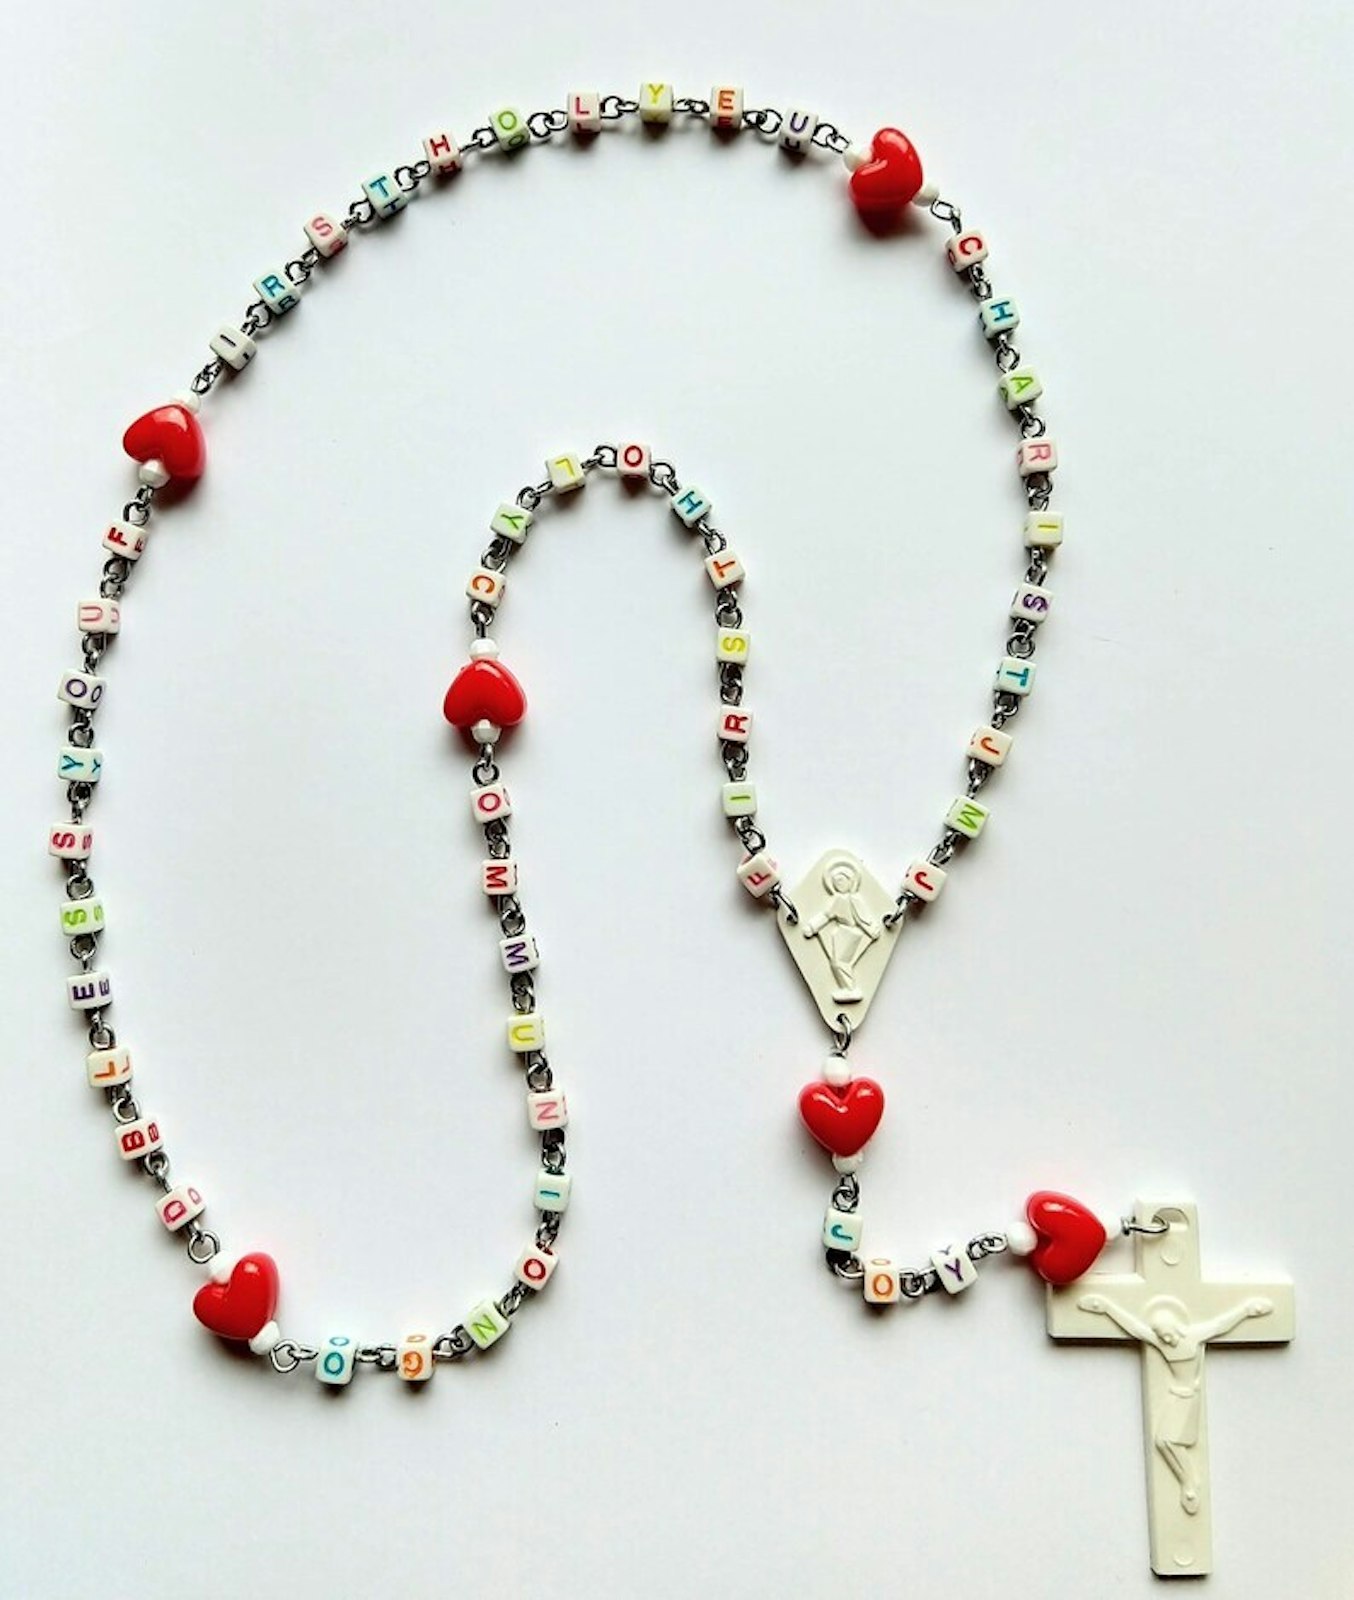 Uno de los rosarios personalizados disponibles en la tienda Etsy de Weber incluye cuentas de letras personalizables que se pueden arreglar según los diseños del cliente.